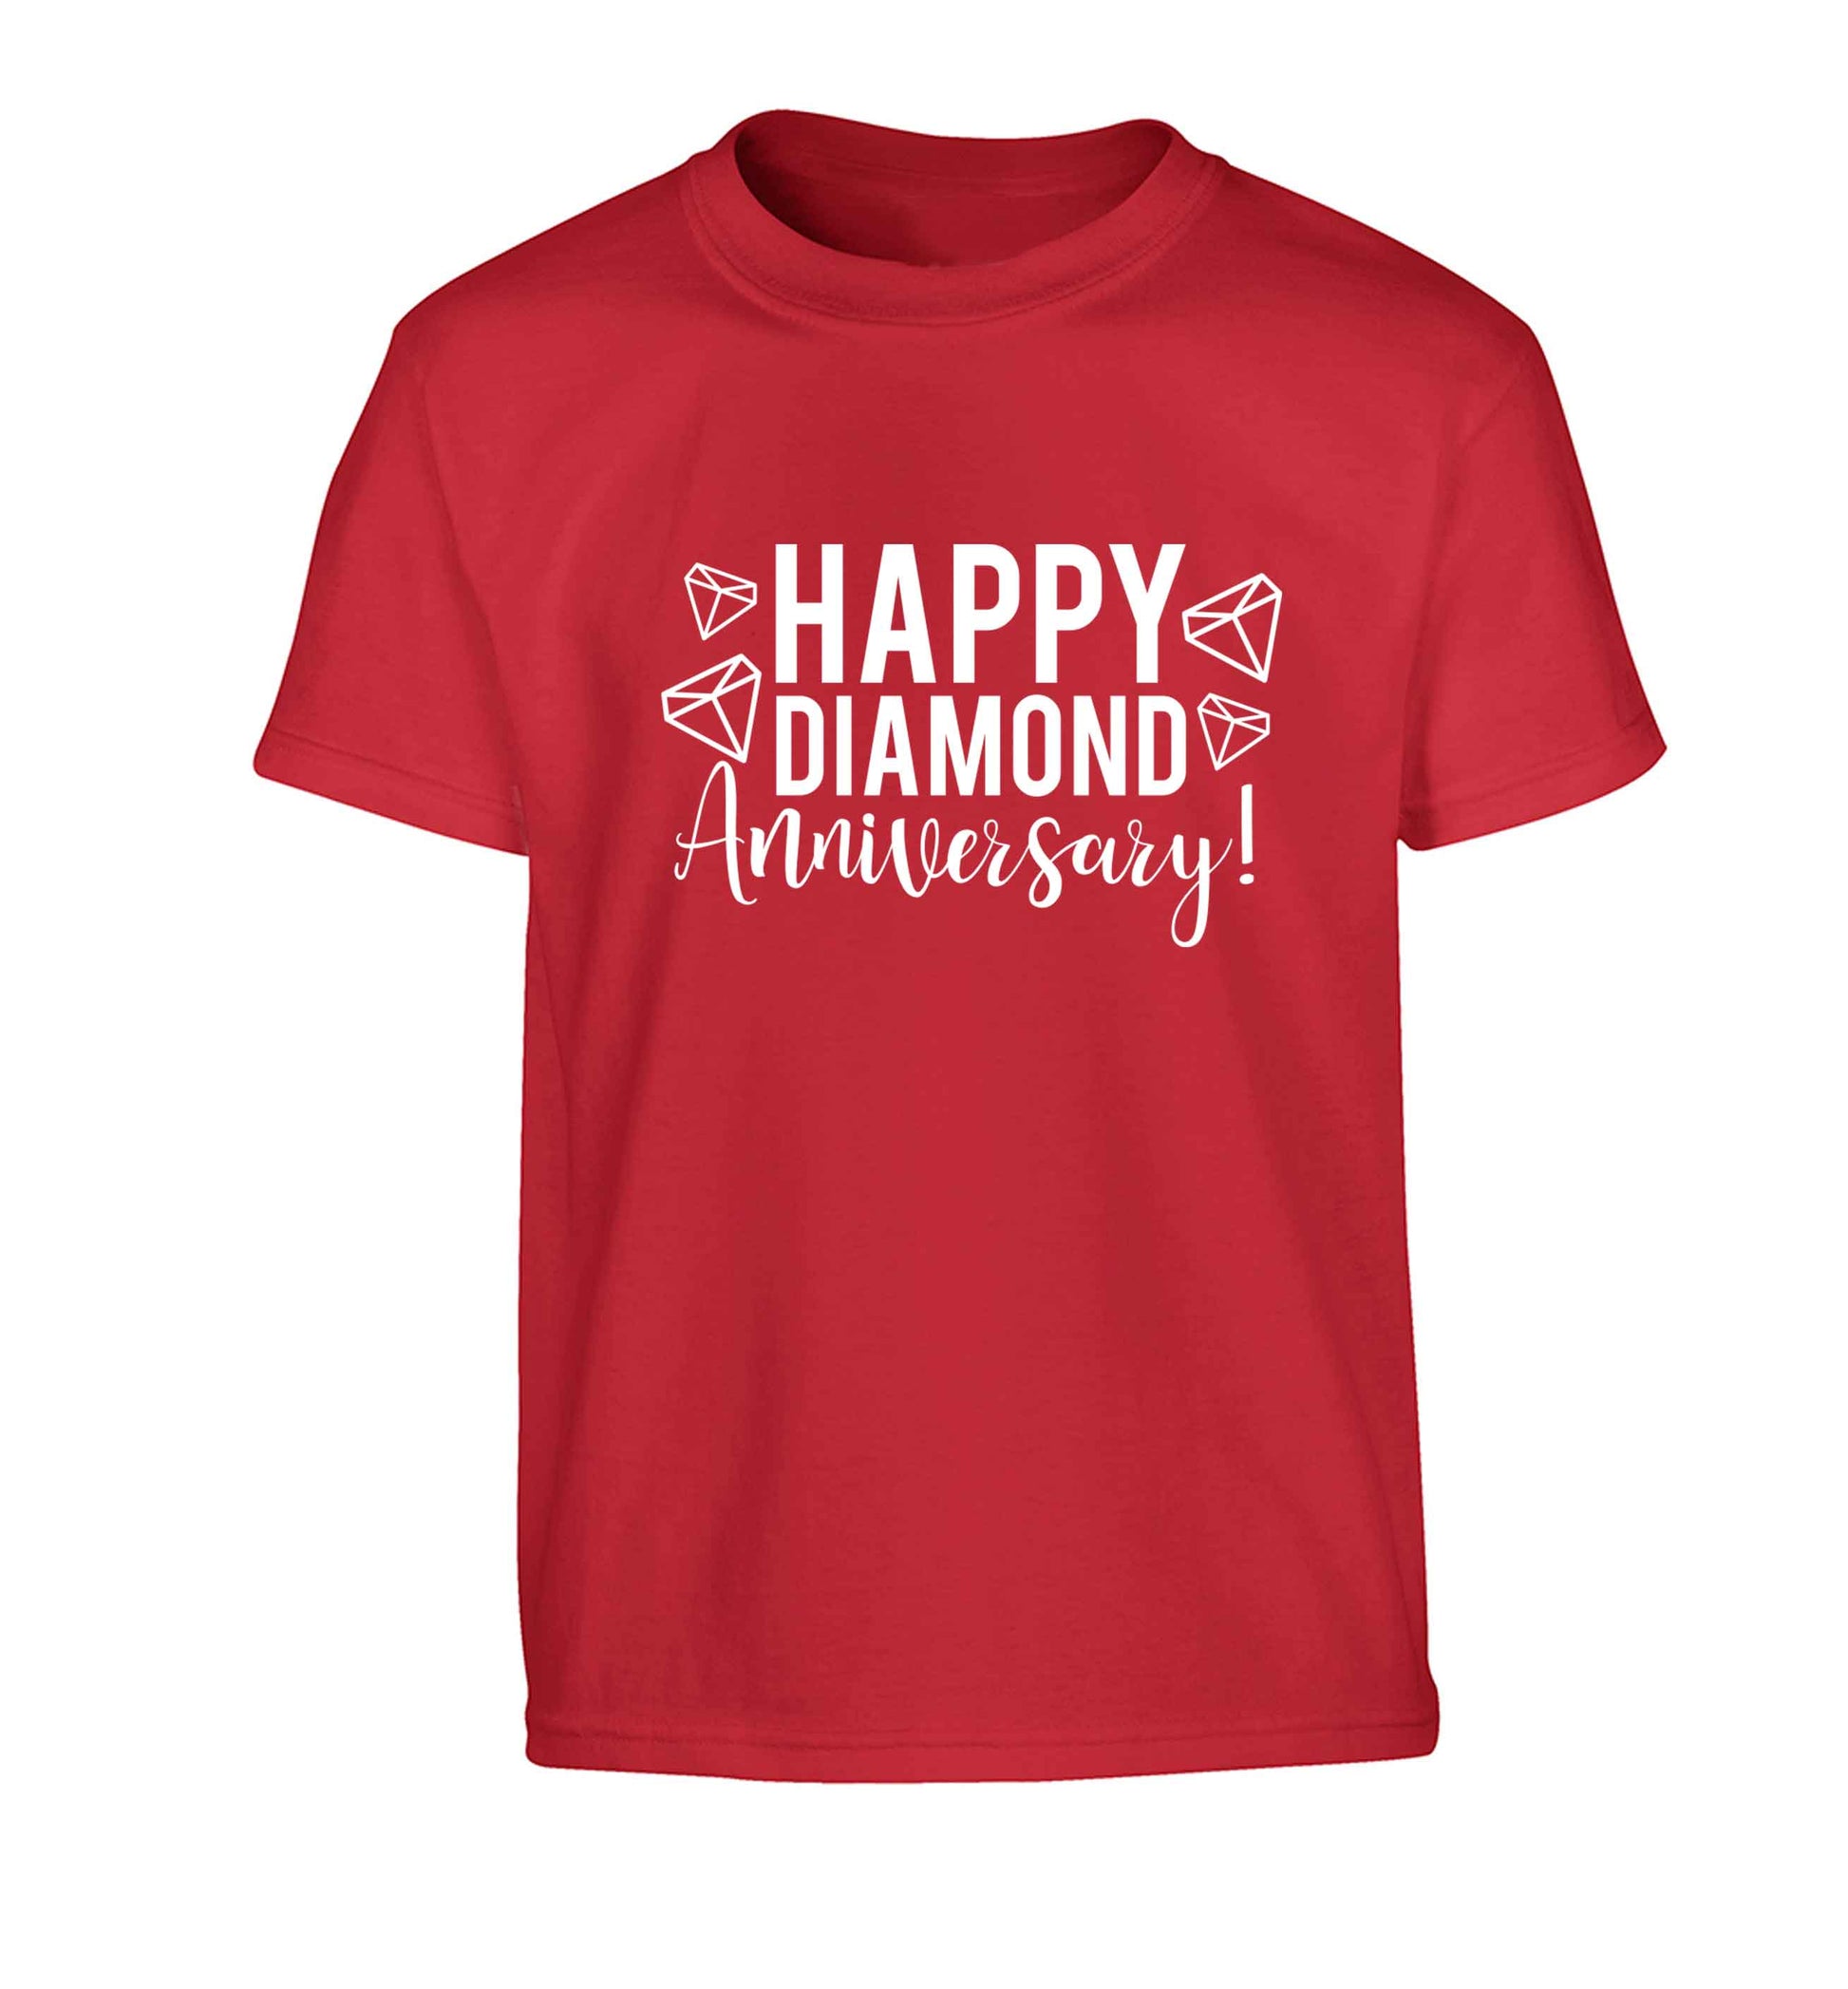 Happy diamond anniversary! Children's red Tshirt 12-13 Years